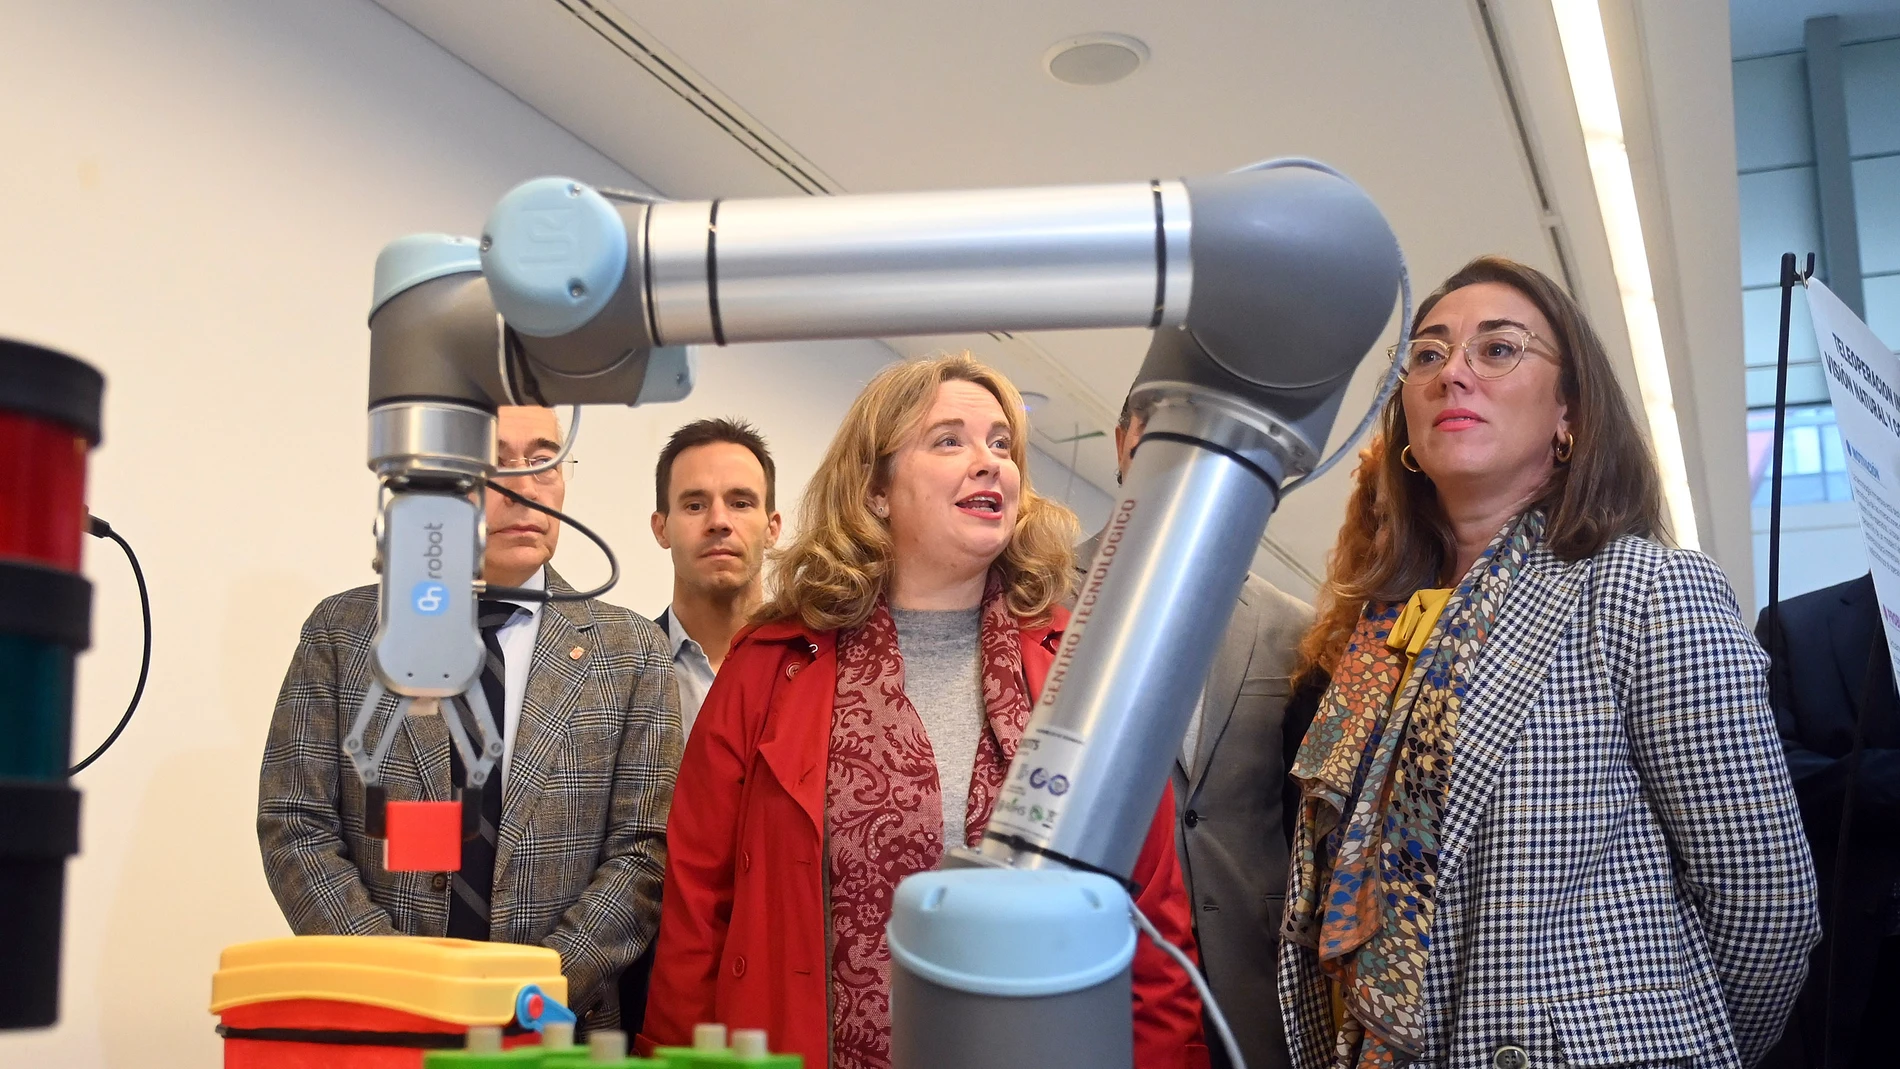 La consejera María González Corral inaugura, junto a la alcaldesa de Burgos, Cristina Ayala, el Tercer Encuentro Tecnológico Burgos Industria 4.0